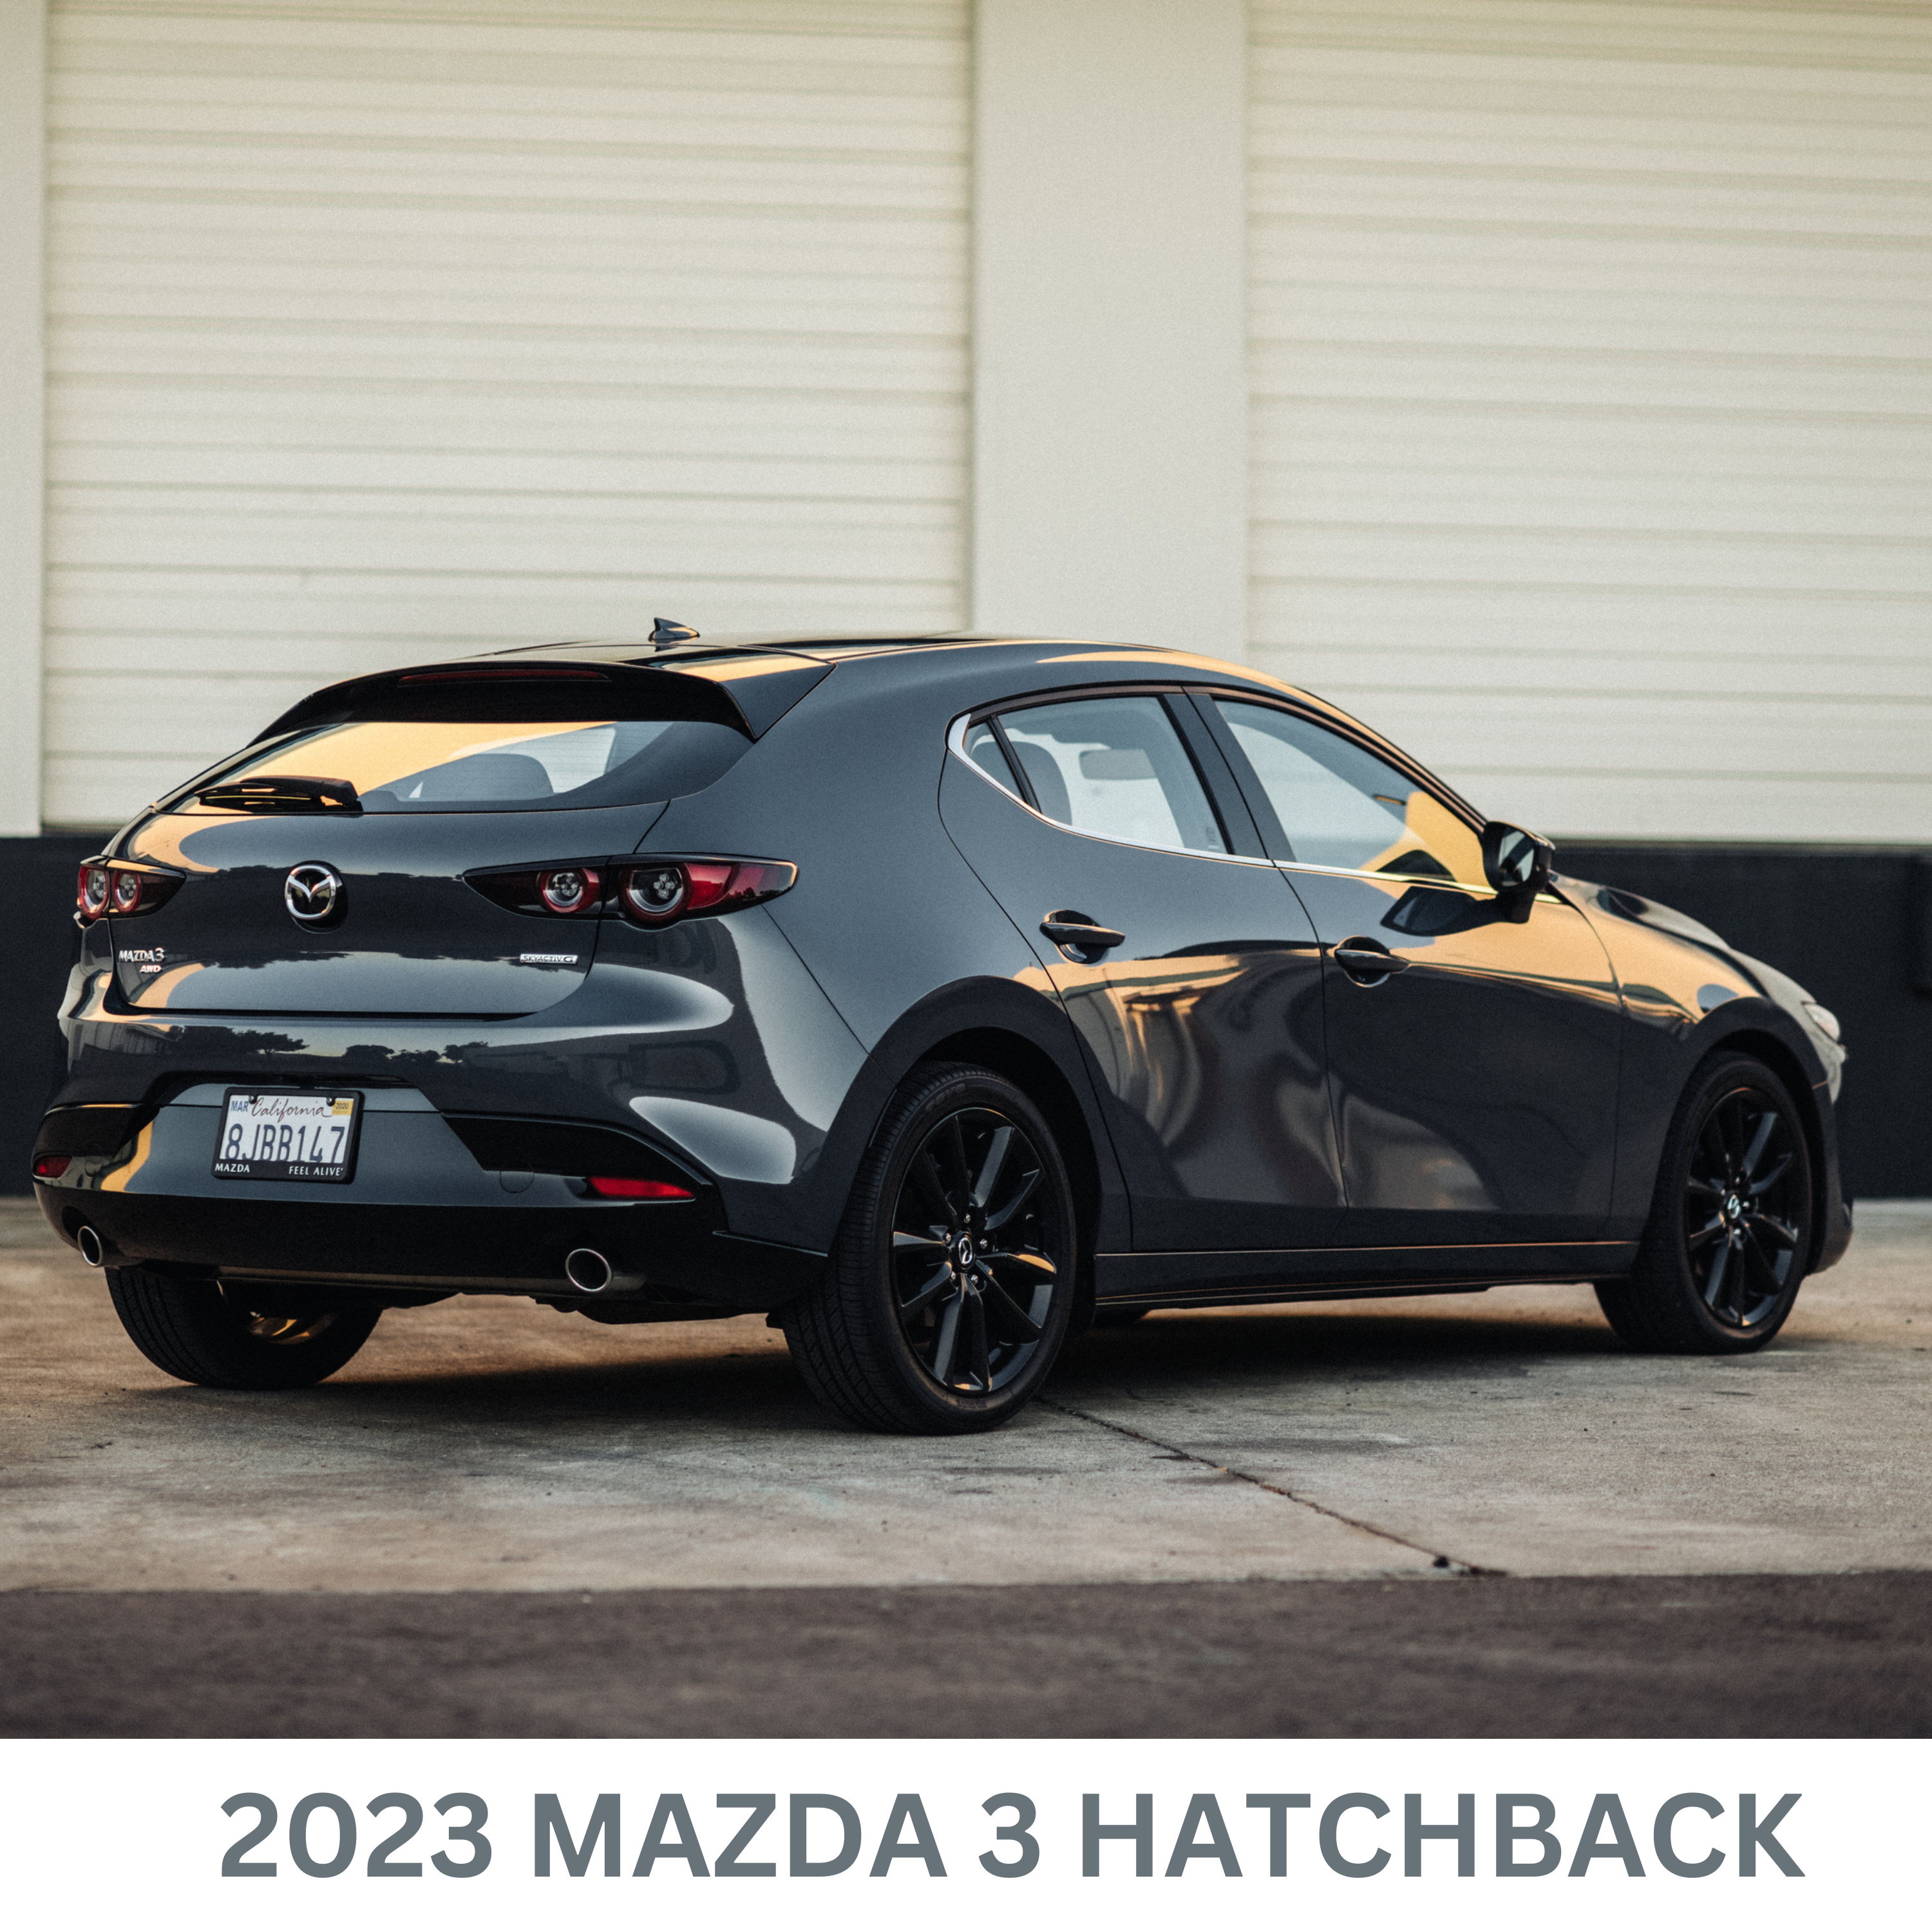 2023 Mazda 3 Hatchback Review